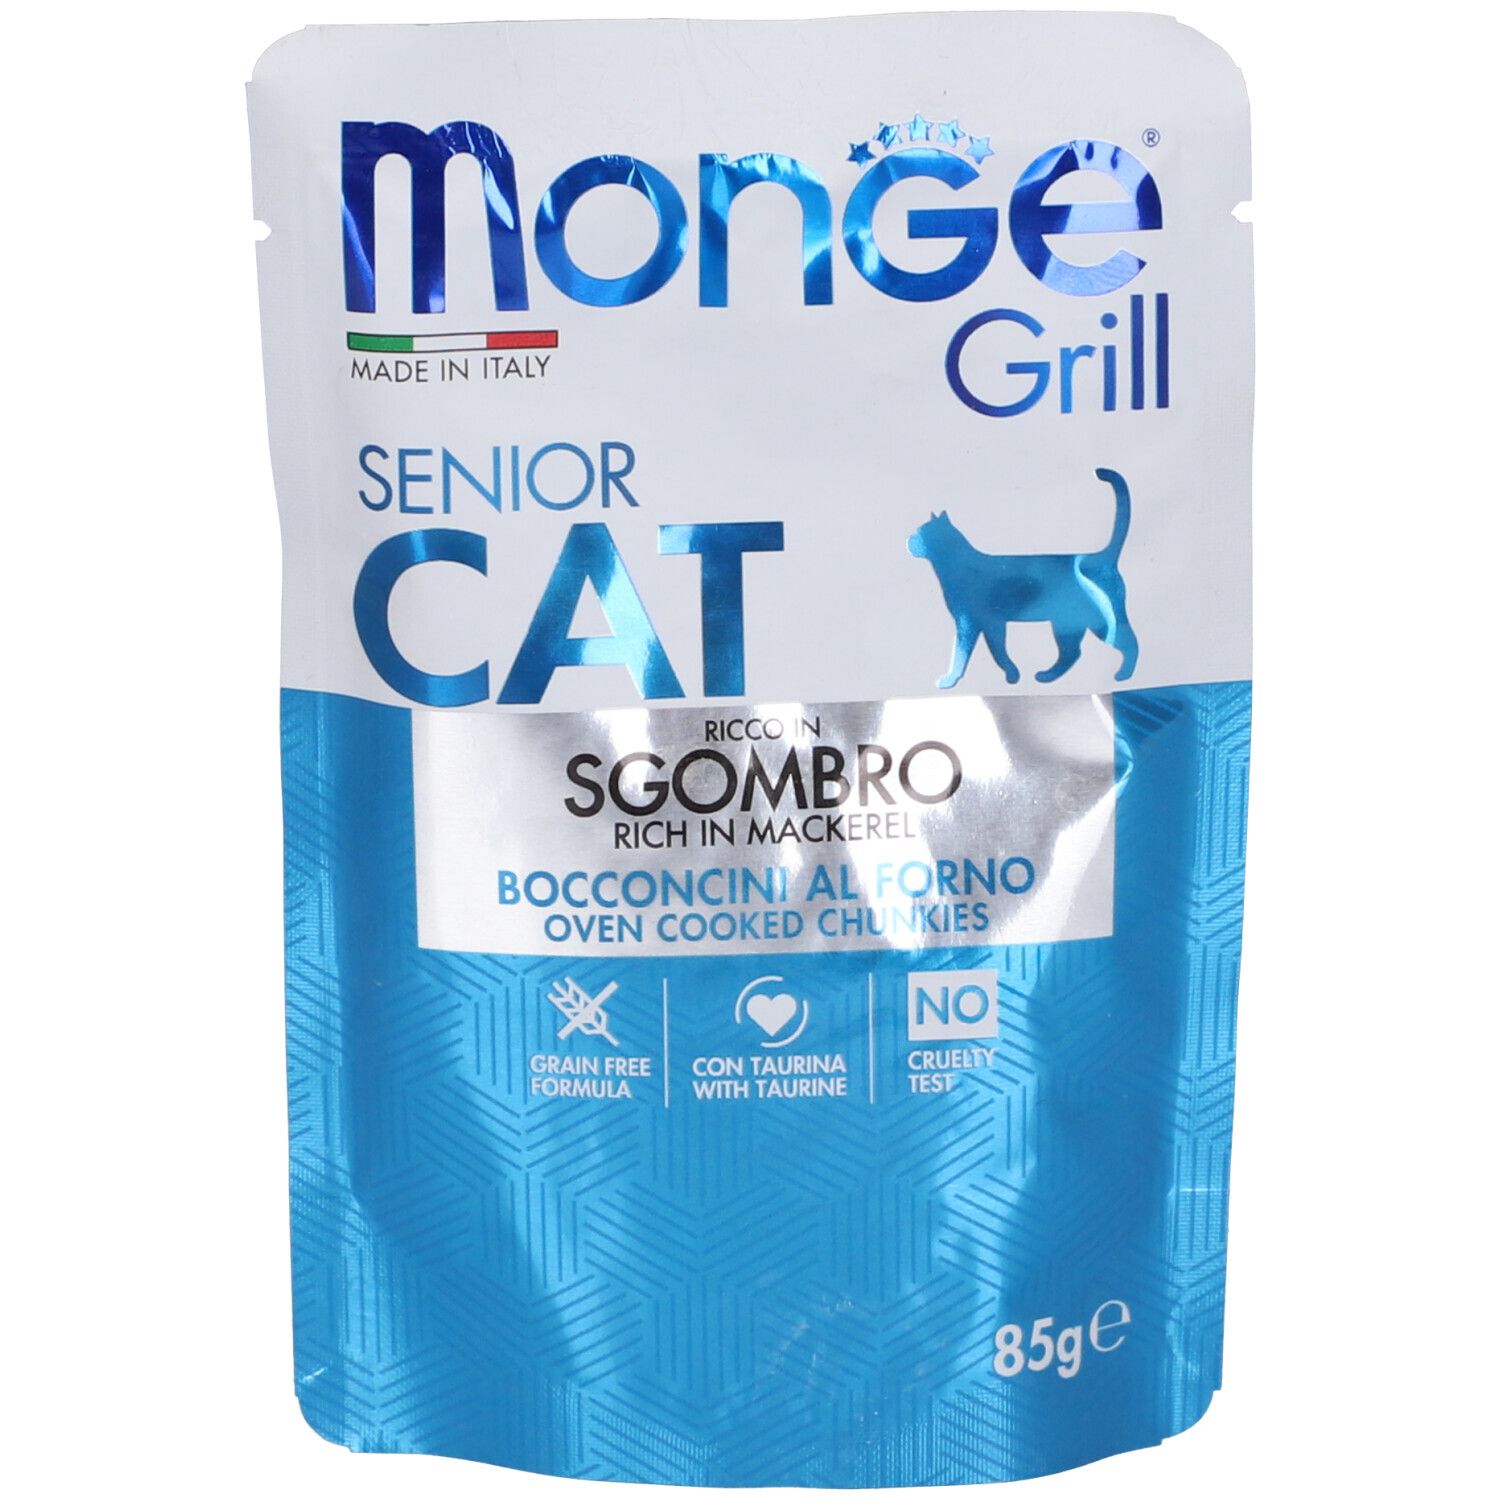 Monge Grill Senior Cat Bocconcini Al Forno Ricco In Sgombro